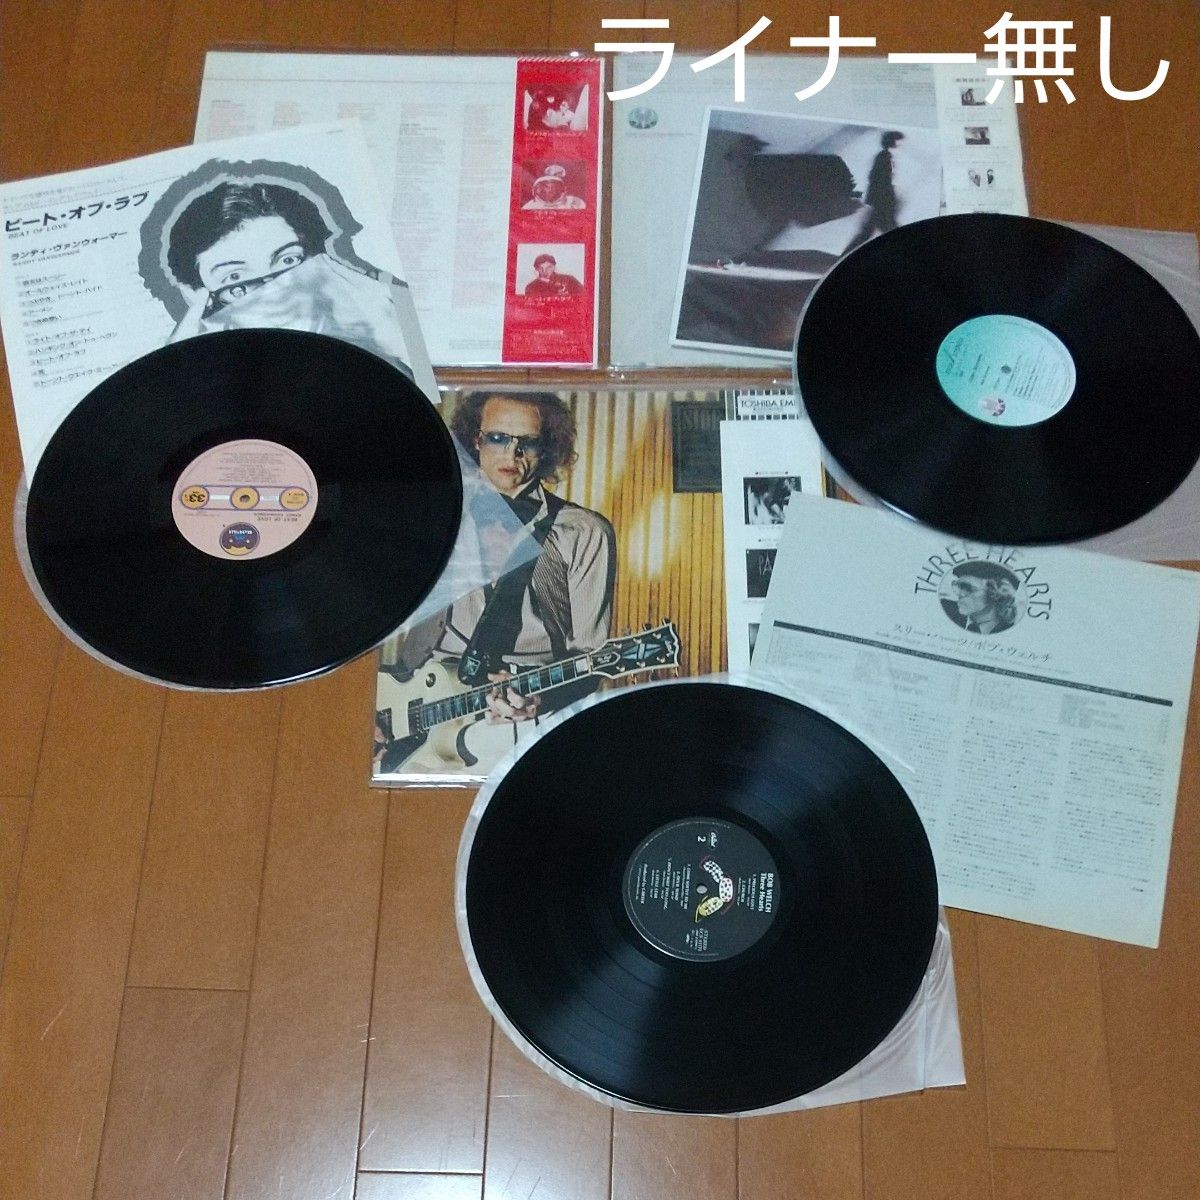 洋楽 AOR日本盤帯付 LP レコード10枚セット⑤まとめ売り